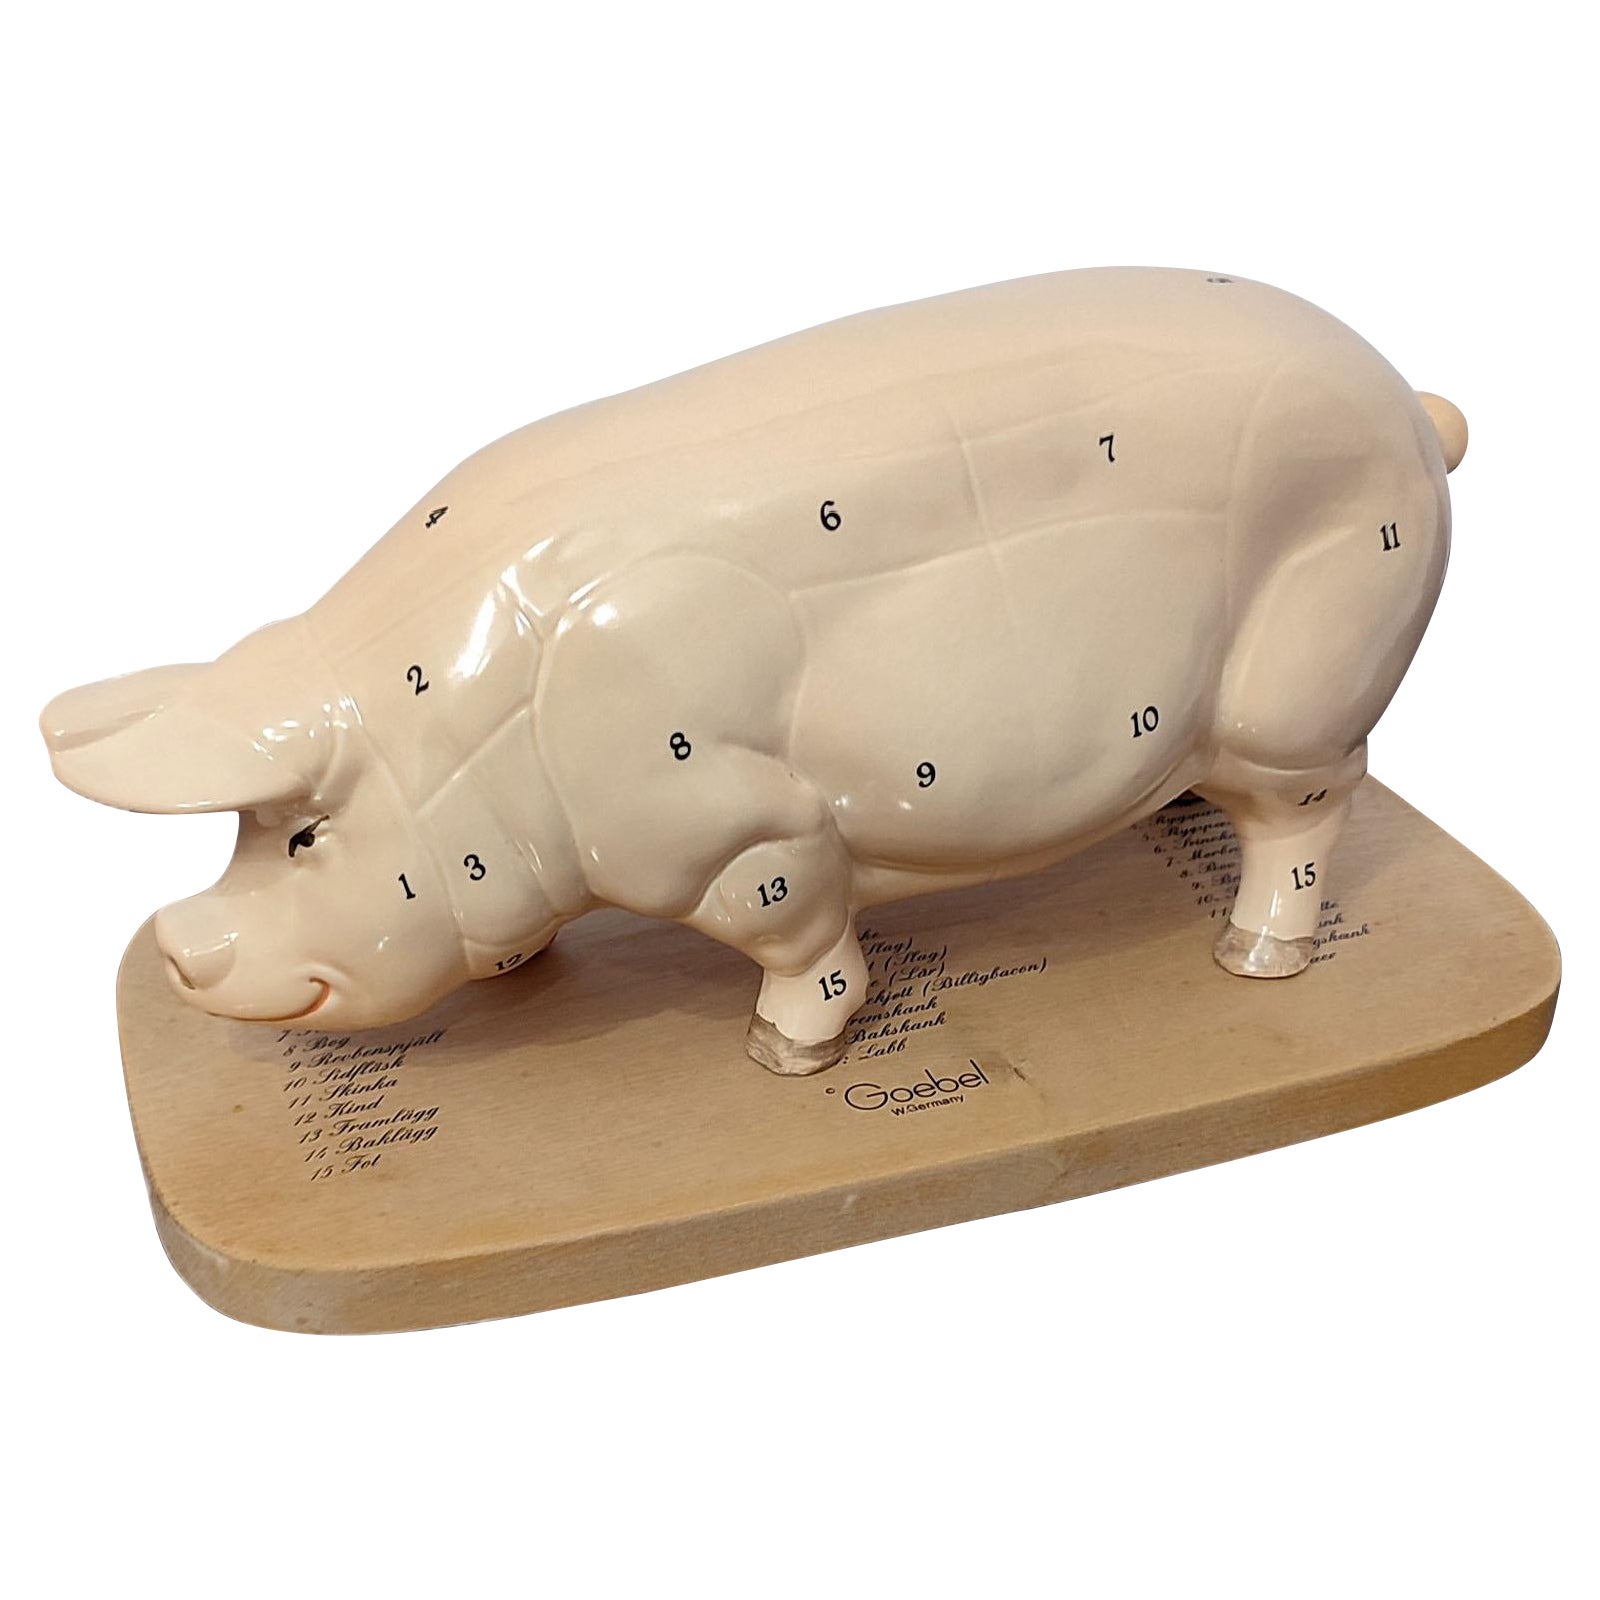 Goebel Allemagne de l'Ouest, Pig for the Butcher Shop, design Gerhard Wittmann